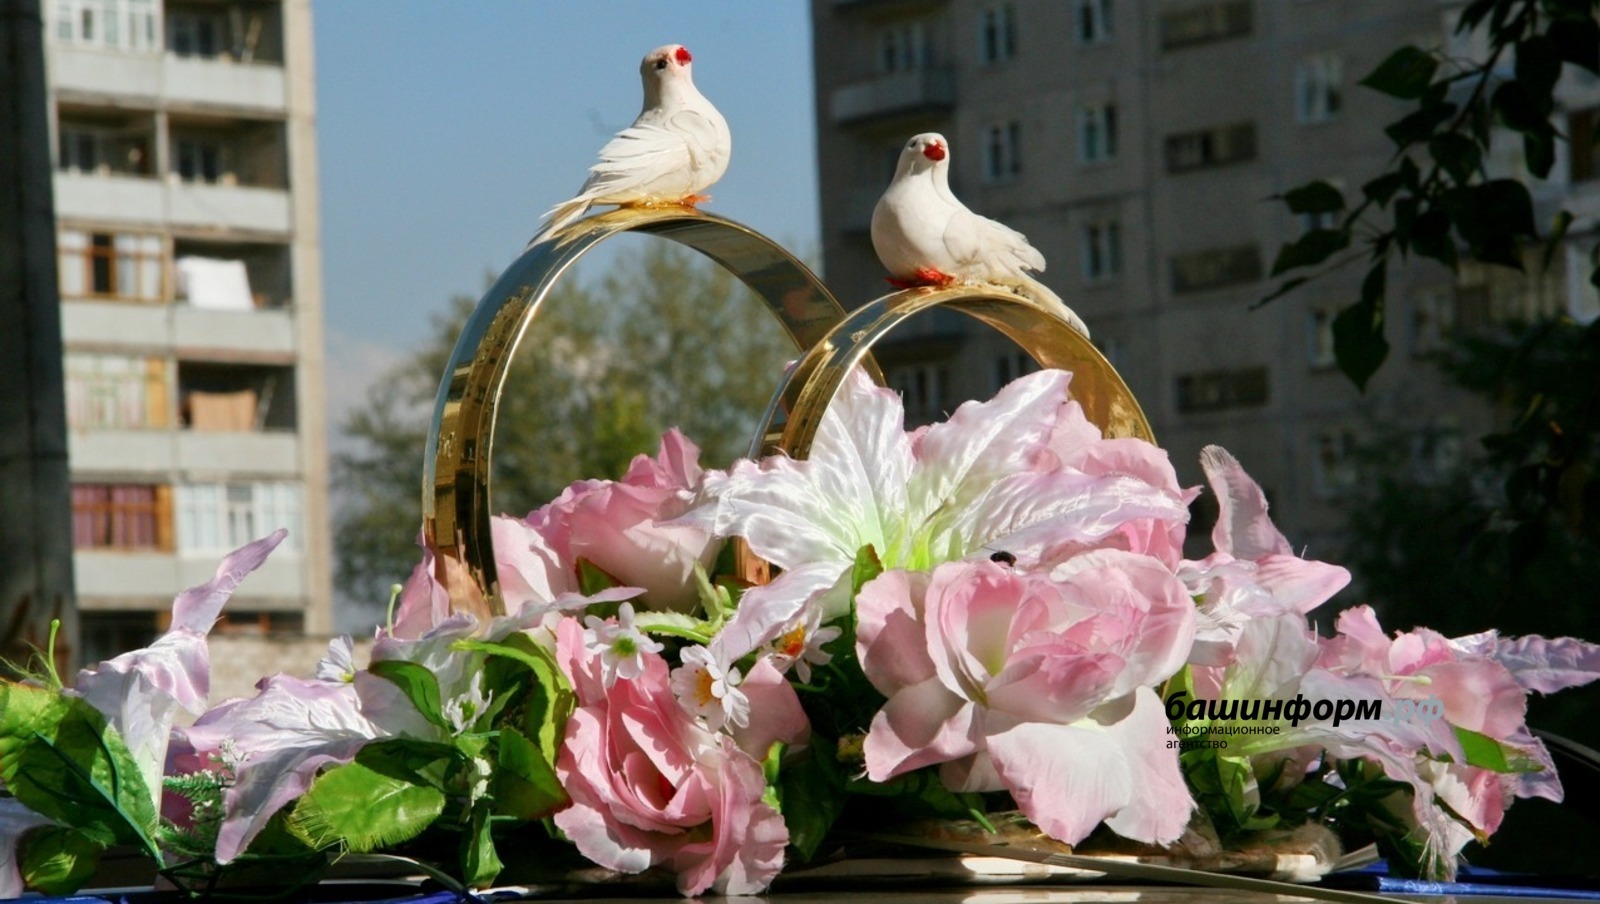 В День семьи, любви и верности в Башкирии  300 пар свяжут во едино свои судьбы